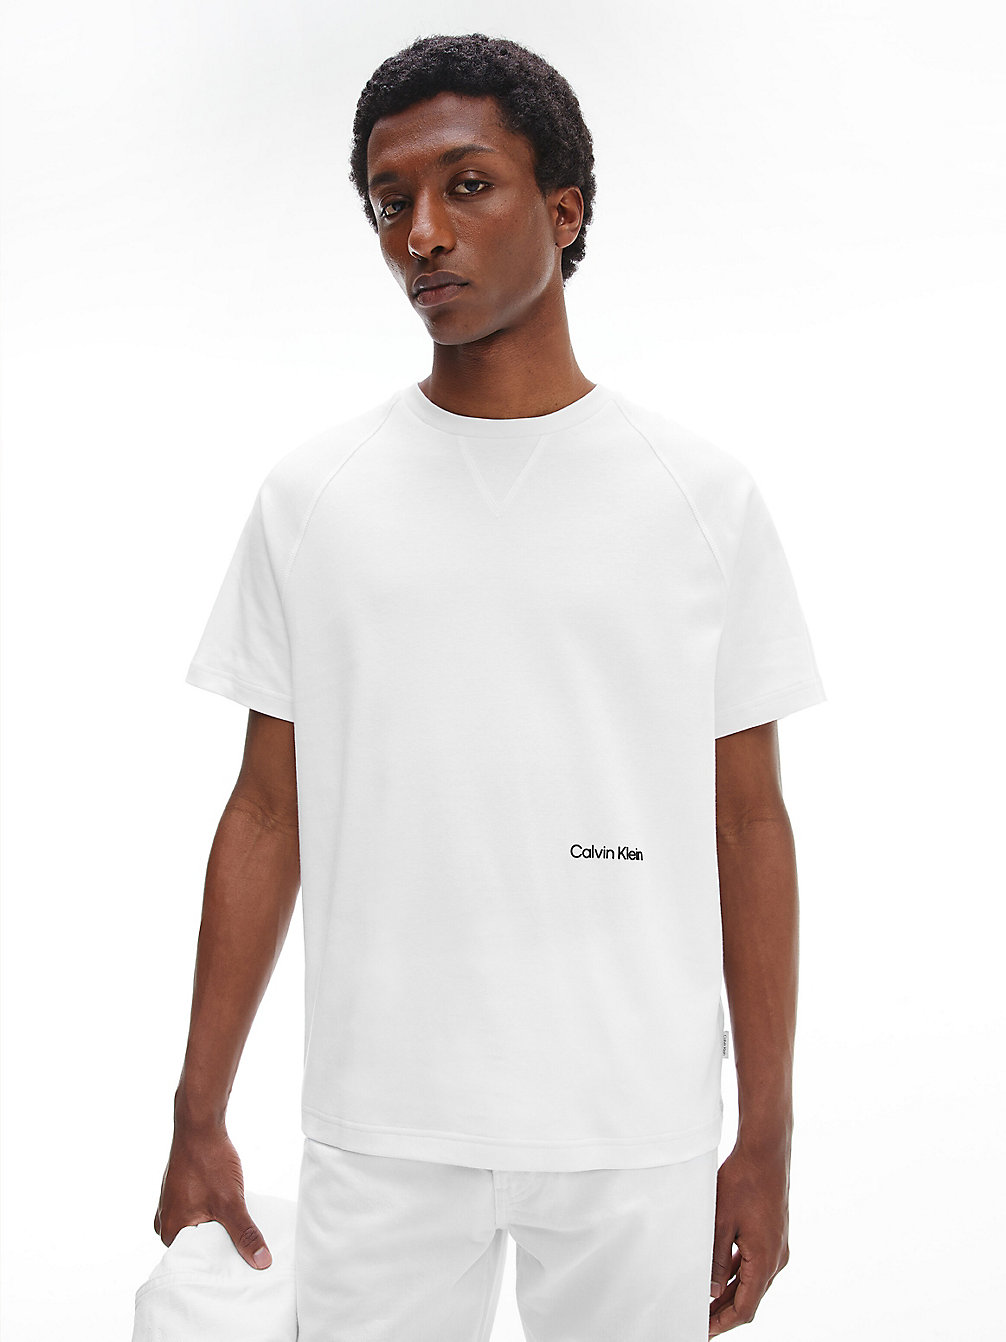 BRIGHT WHITE Raglan-T-Shirt Aus Weicher Baumwolle undefined Herren Calvin Klein